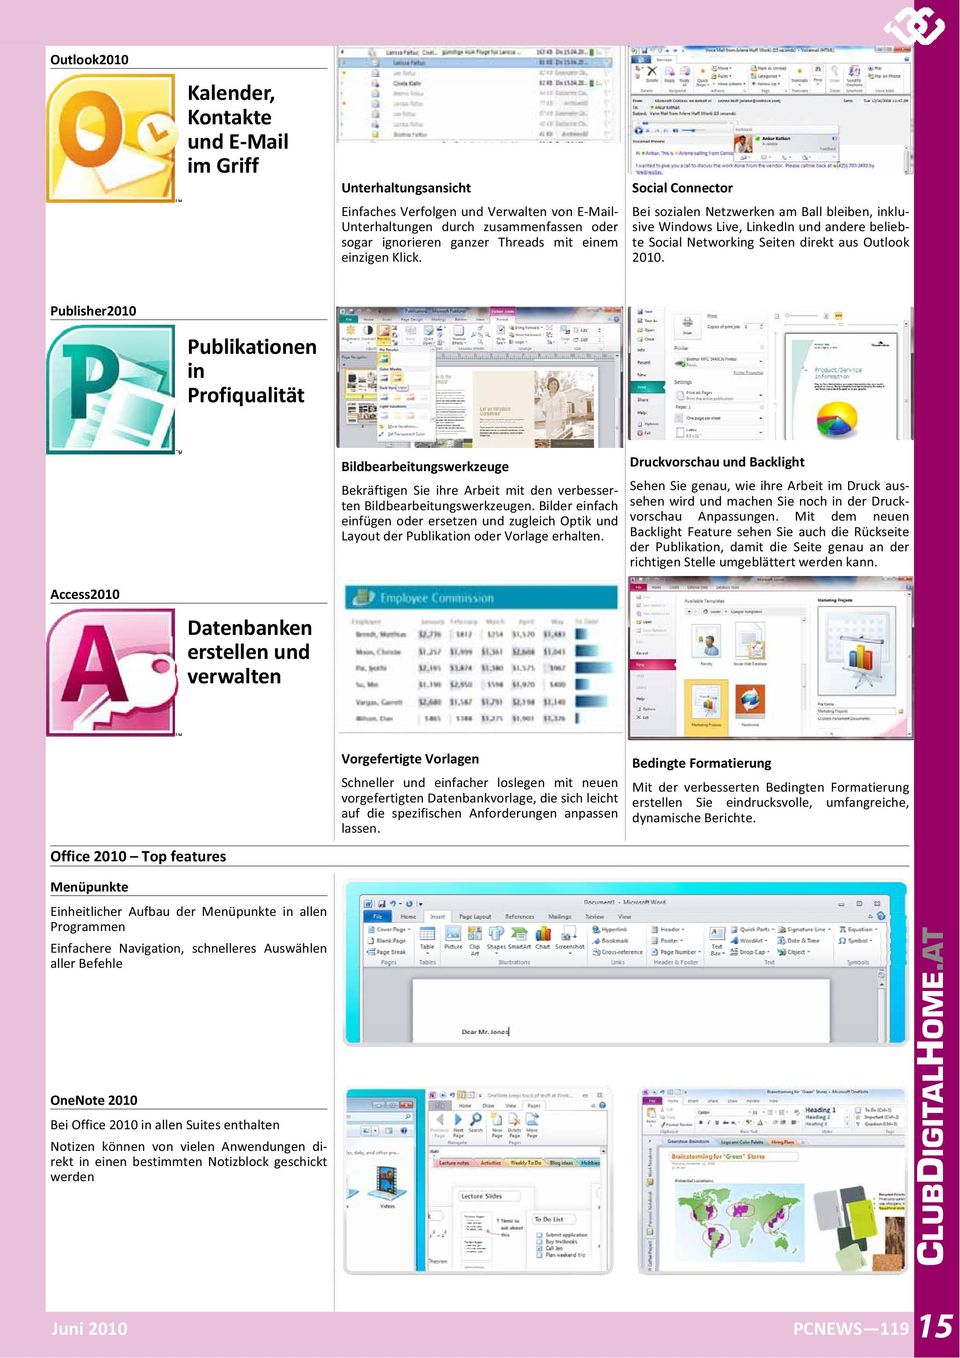 Publisher2010 Publikationen in Profiqualität Bildbearbeitungswerkzeuge Bekräftigen Sie ihre Arbeit mit den verbesser tenbildbearbeitungswerkzeugen.